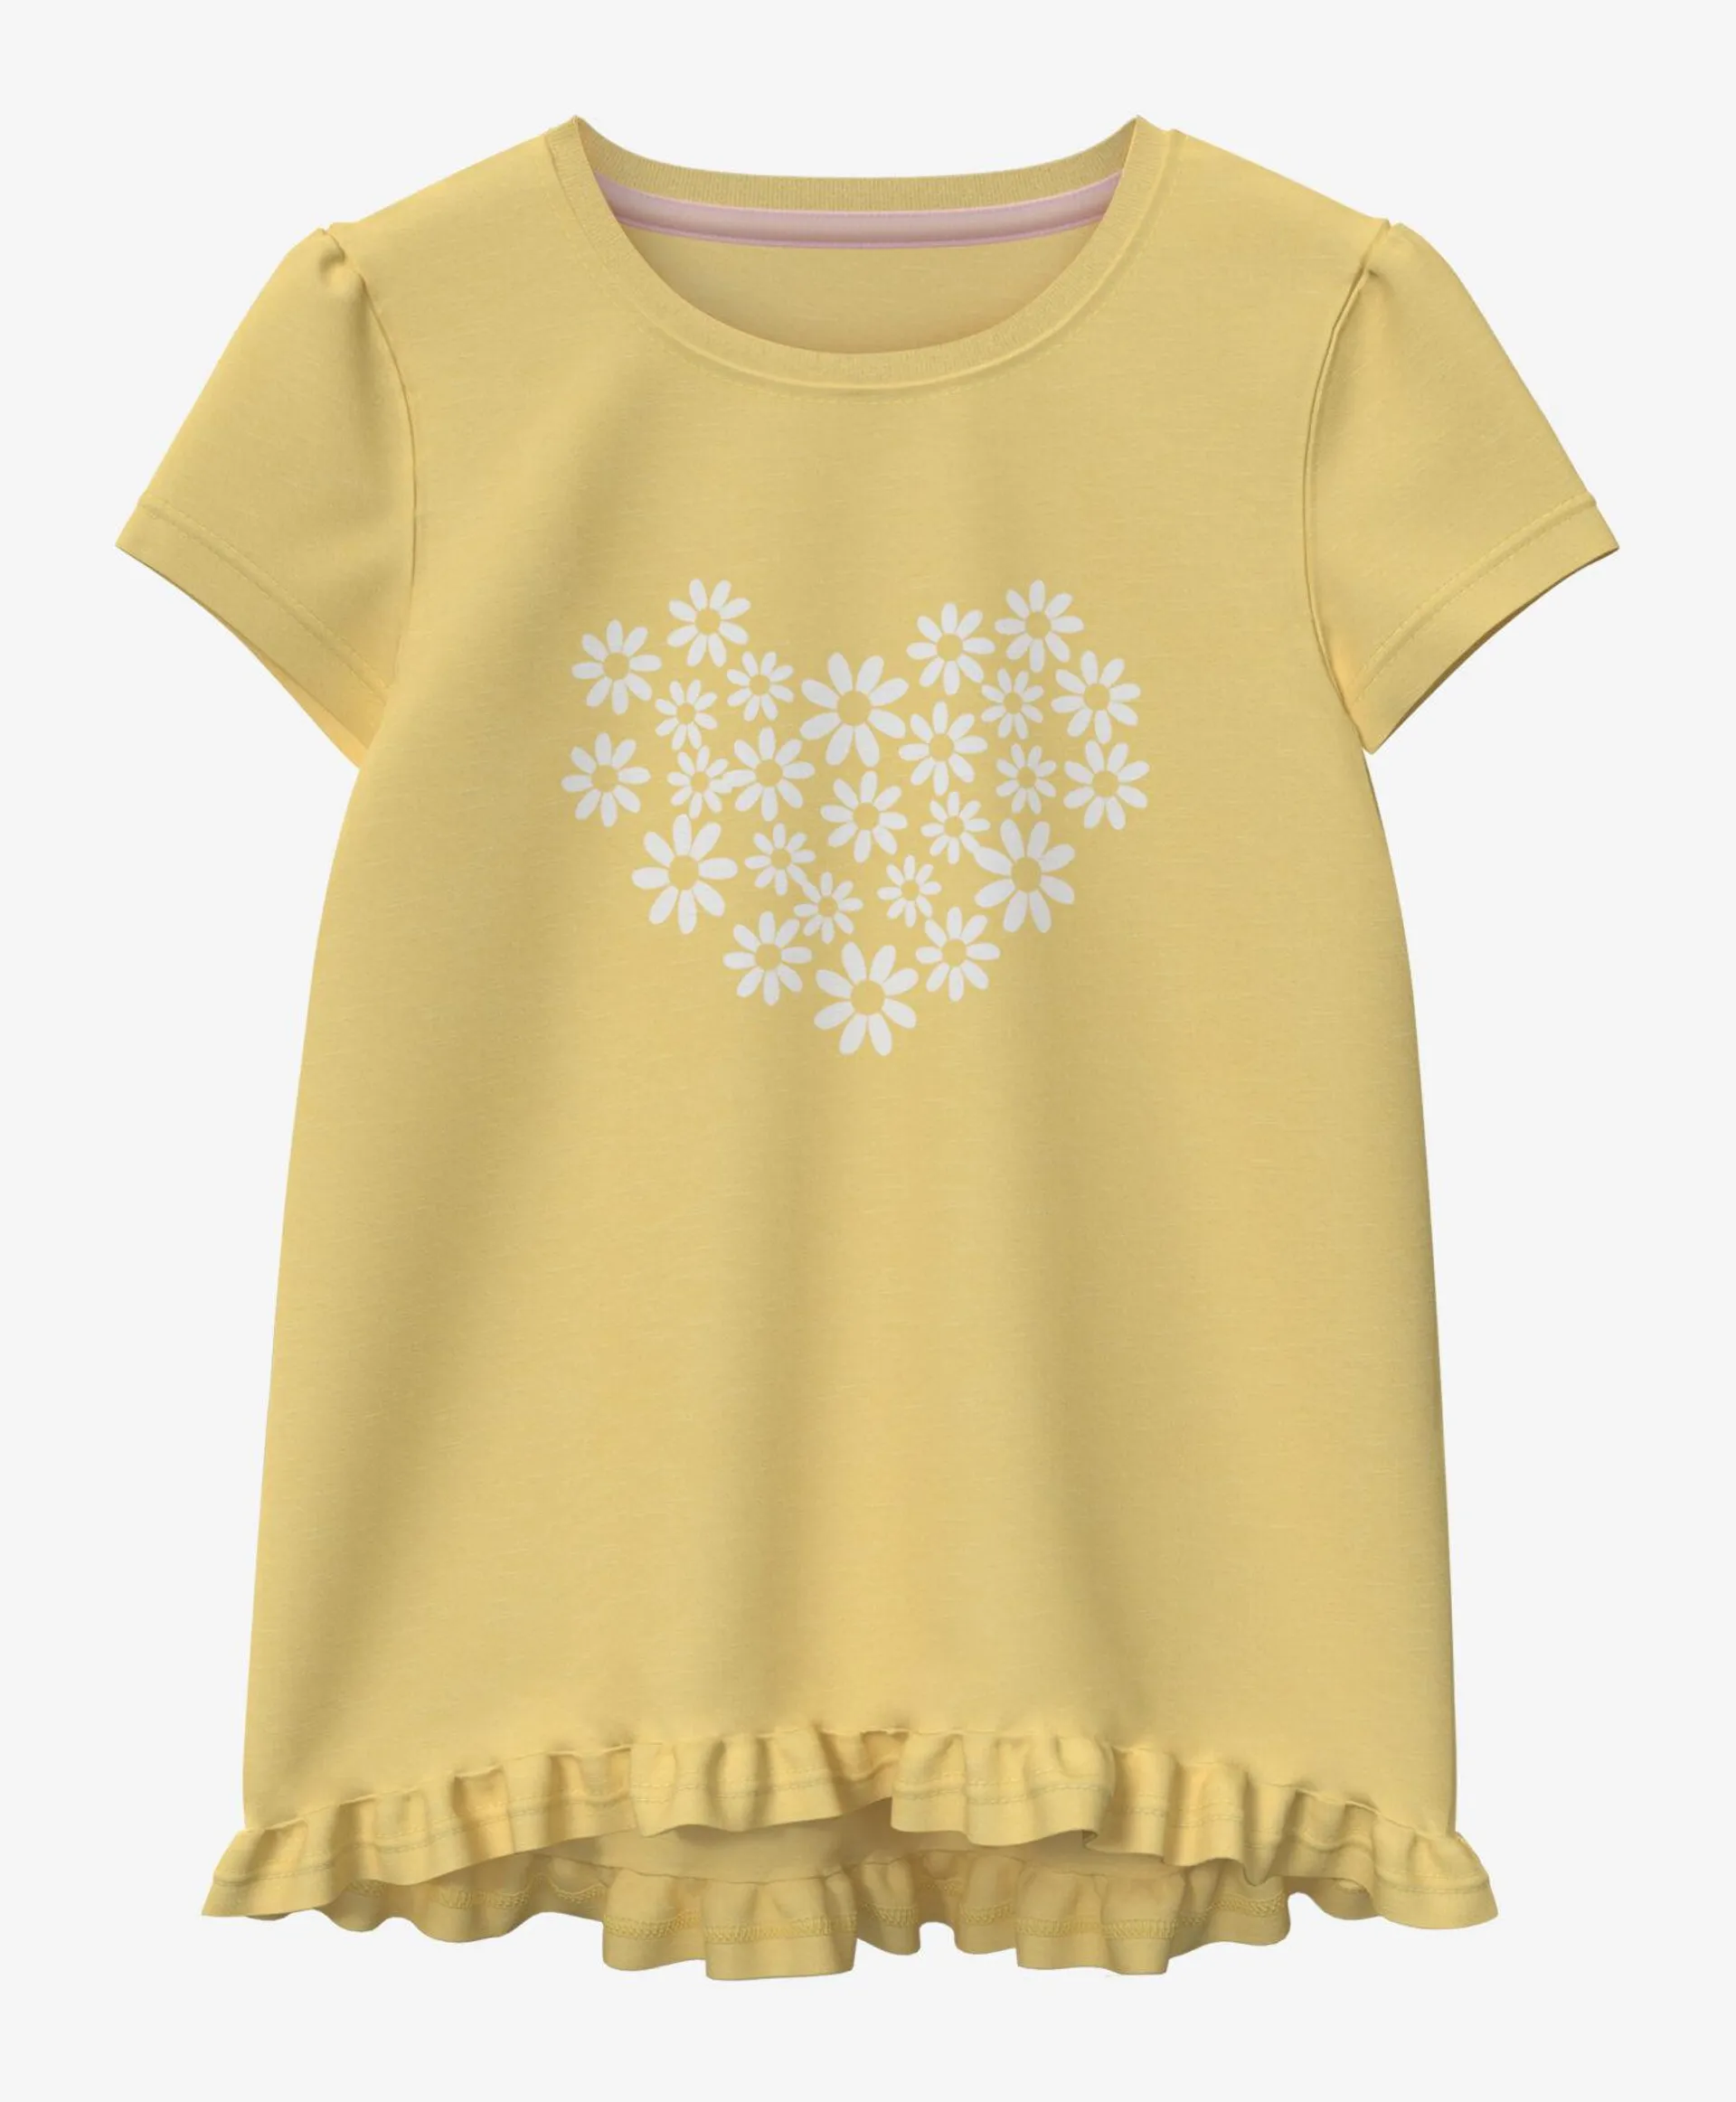 Żółta koszulka dziewczęca 100% bawełny